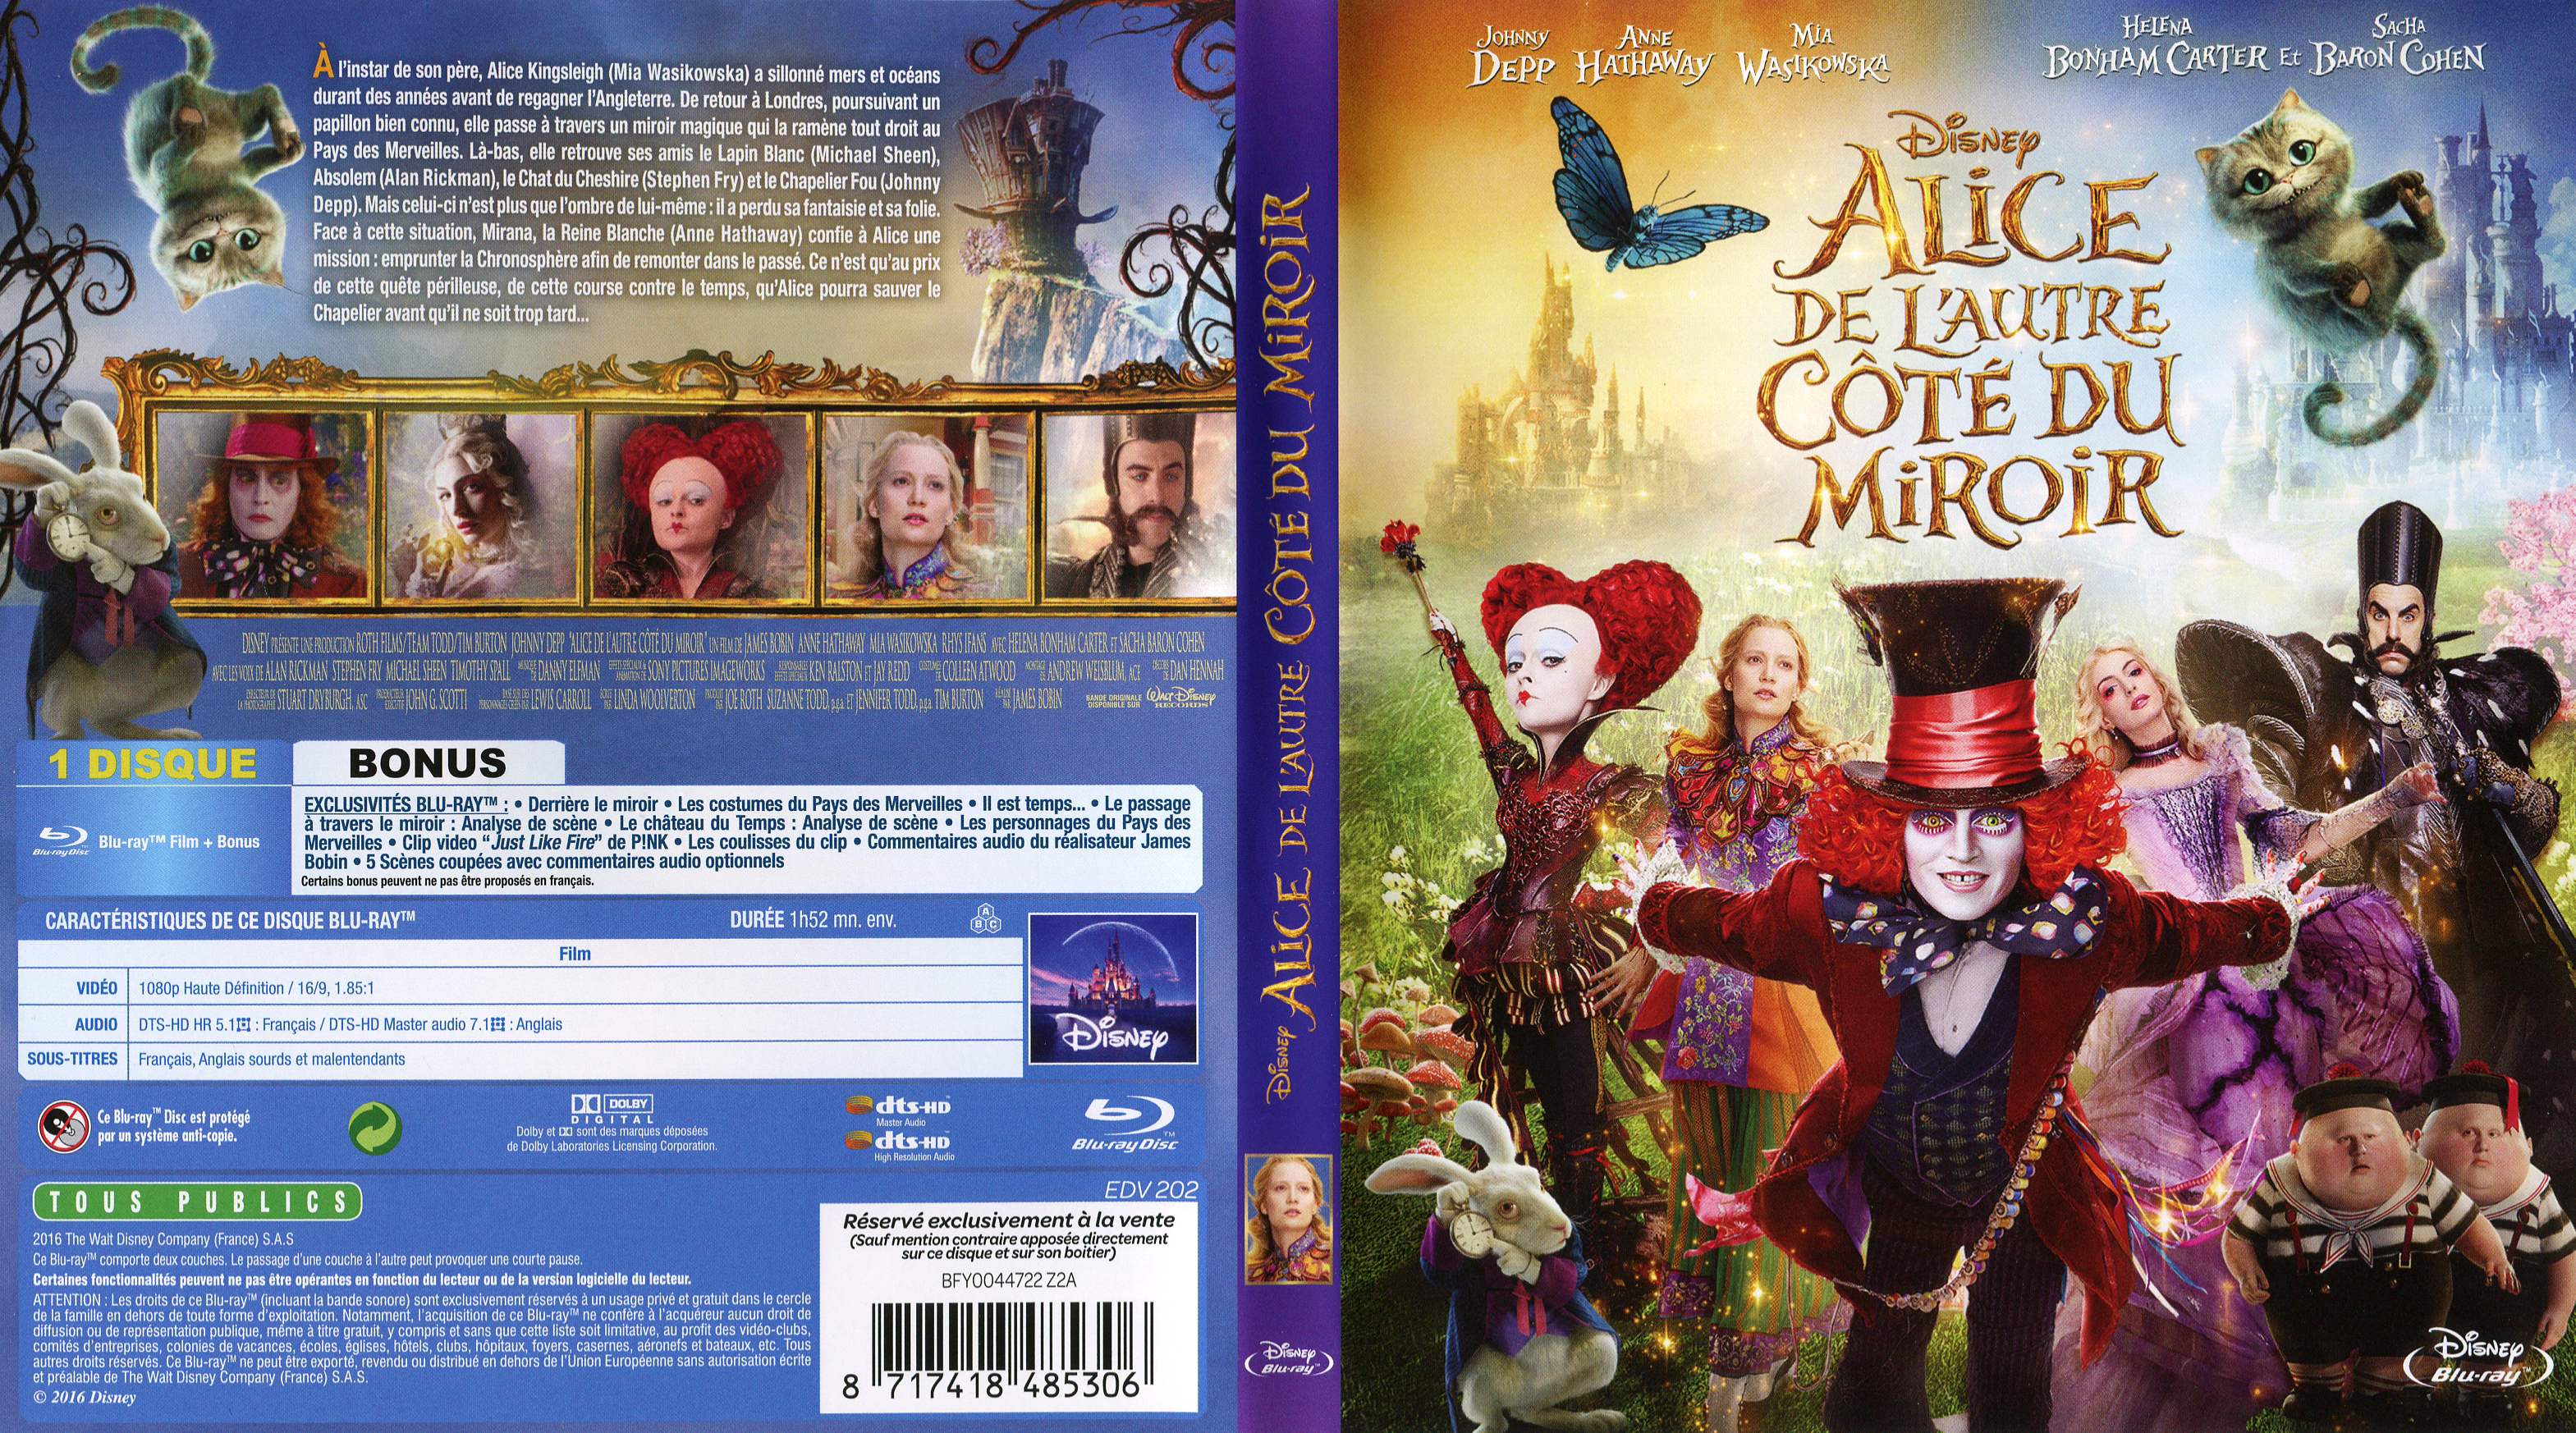 Jaquette DVD Alice de l